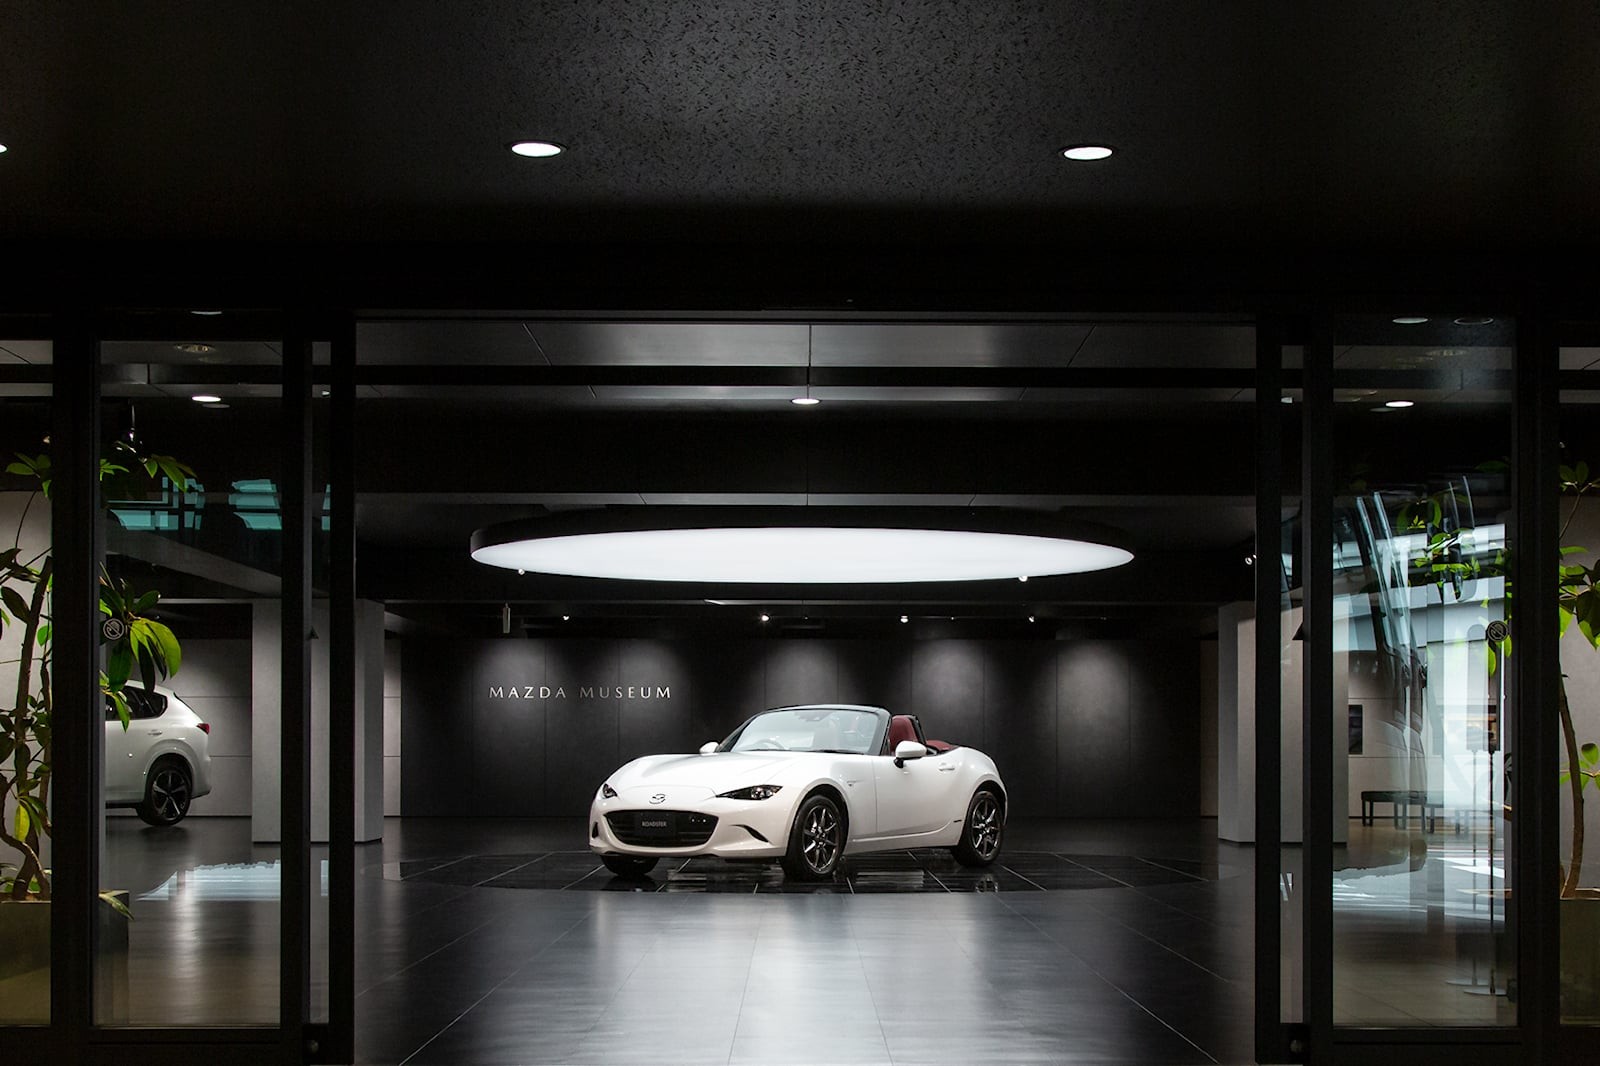 Khám phá bảo tàng của Mazda tại Nhật Bản ảnh 12